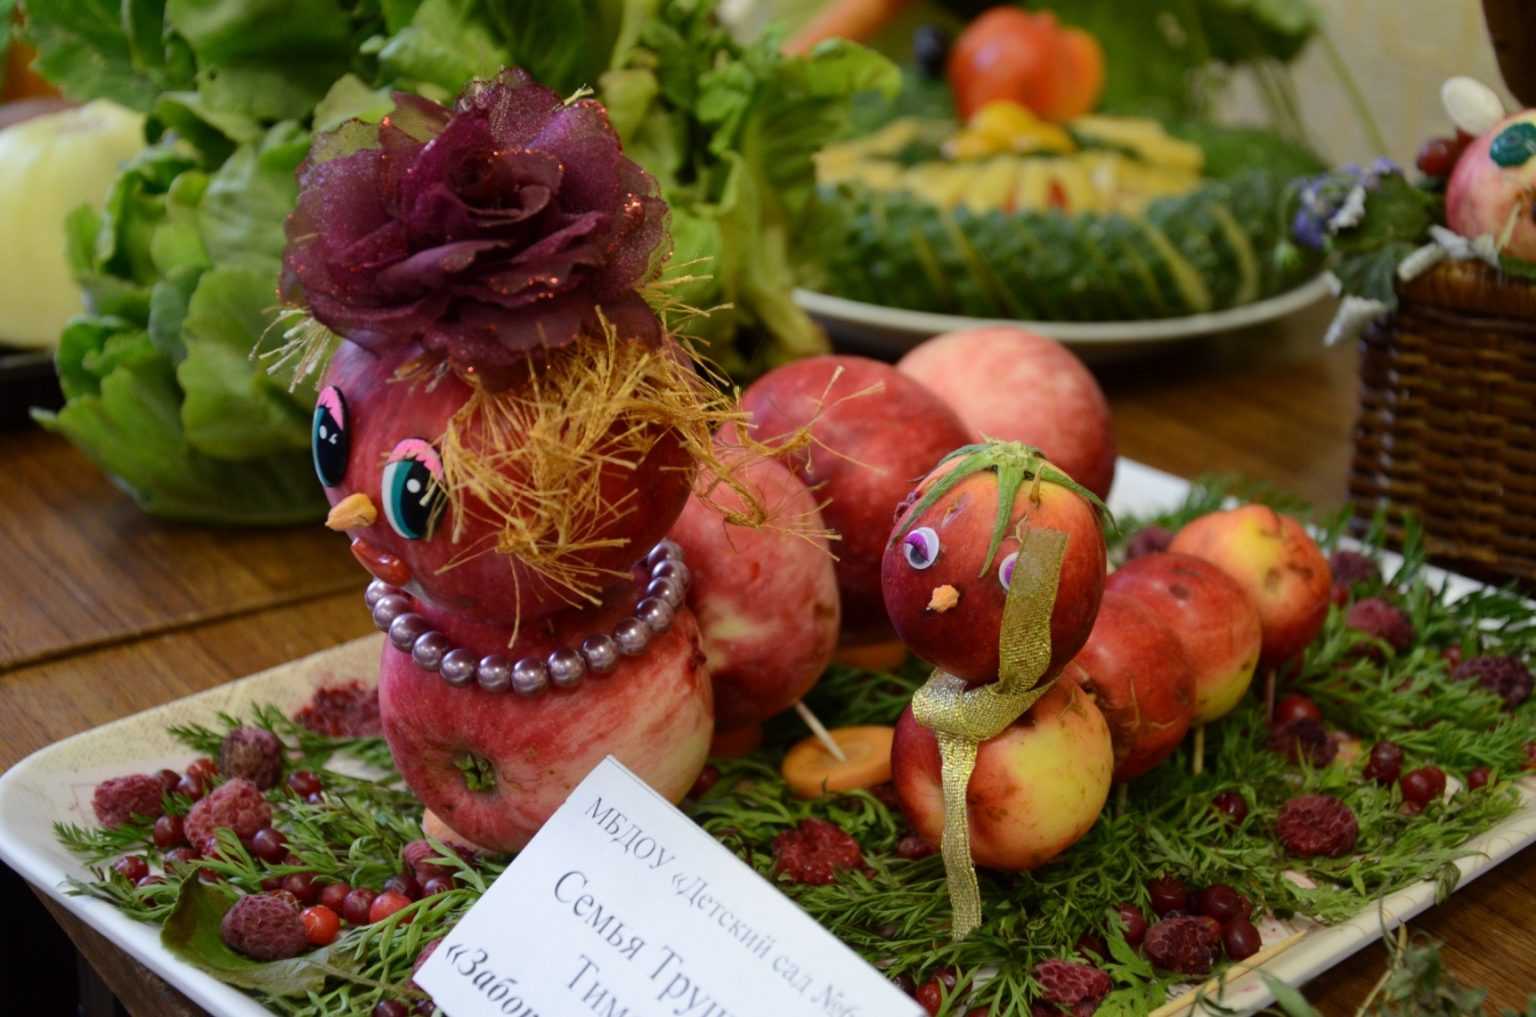 Поделки из овощей и фруктов своими руками для выставки: самое интересное (фото пошагово)